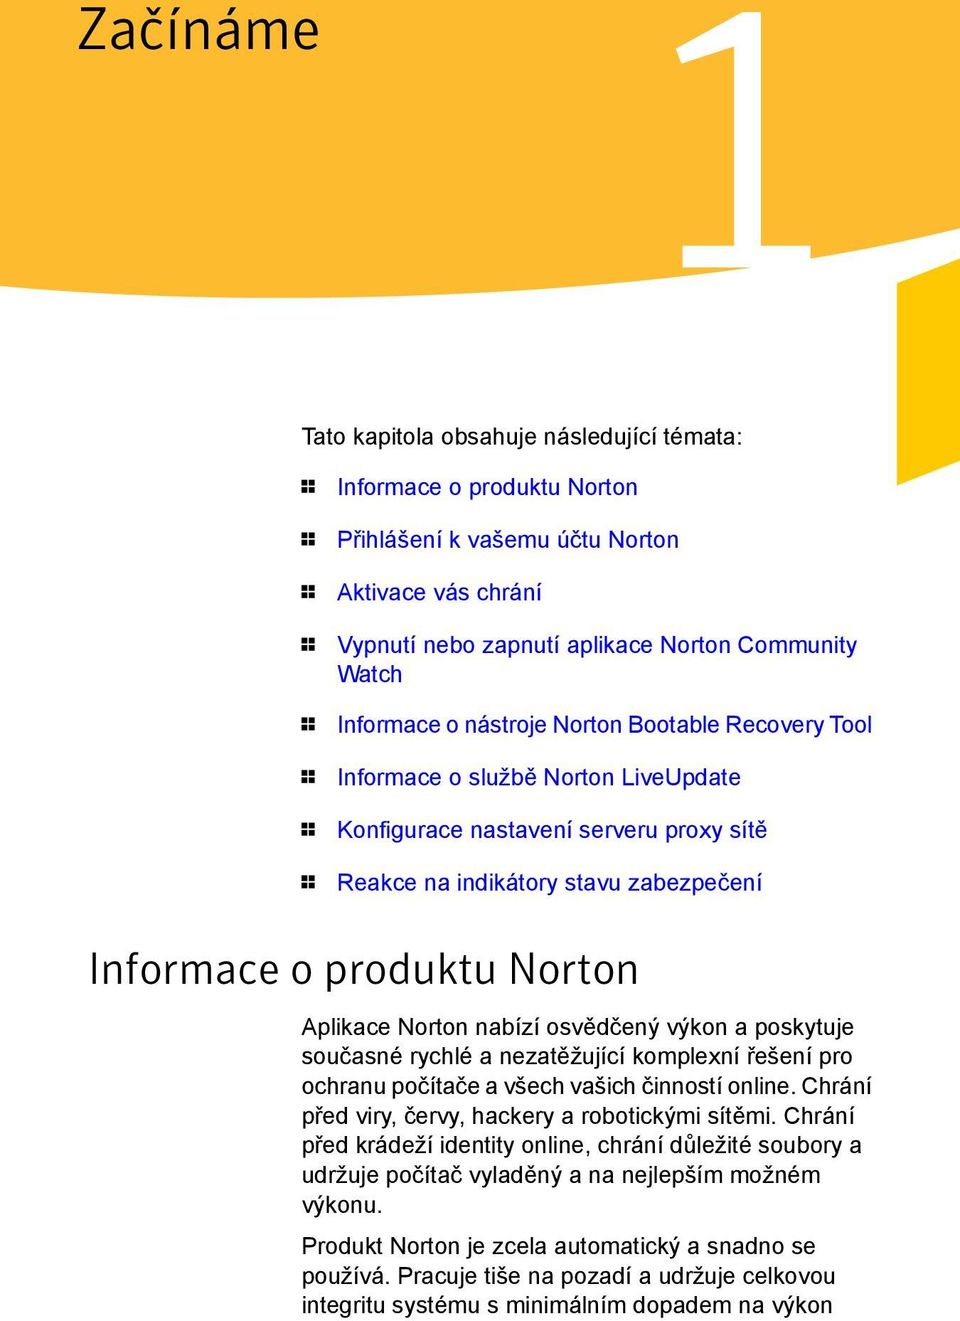 Norton Aplikace Norton nabízí osvědčený výkon a poskytuje současné rychlé a nezatěžující komplexní řešení pro ochranu počítače a všech vašich činností online.